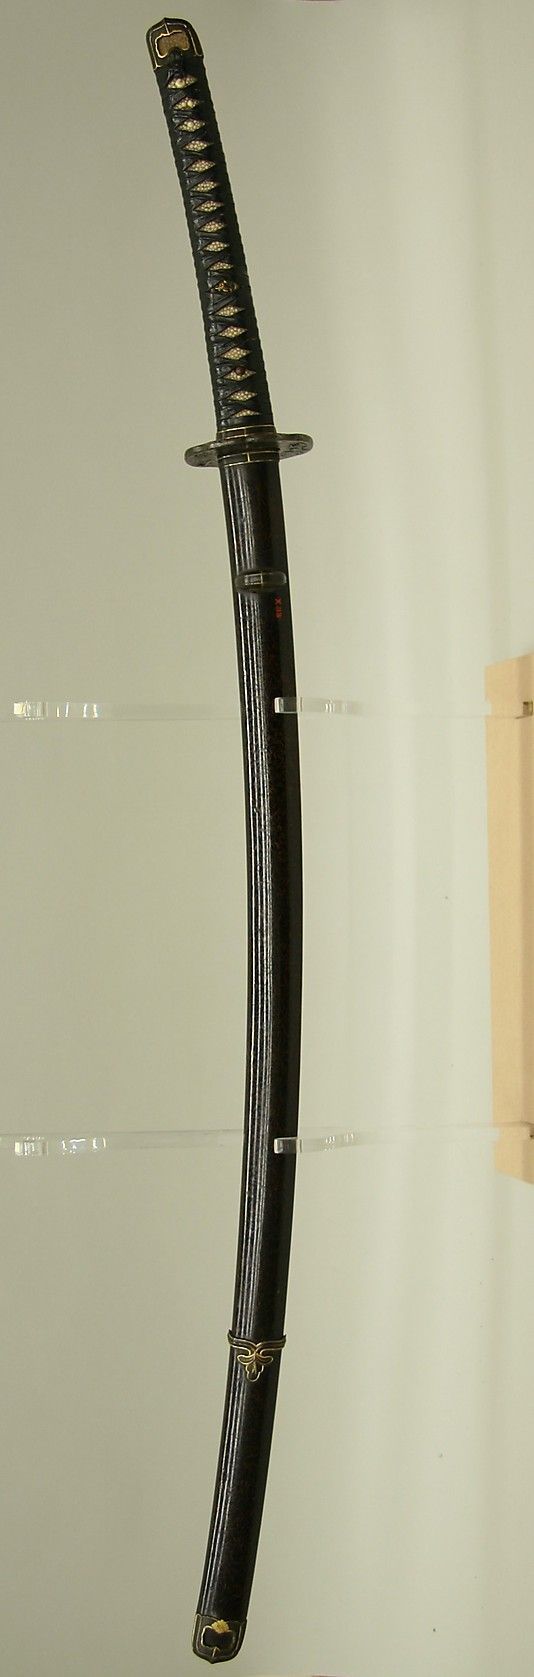 takumiwarrior:  A beautiful Katana A great historic katana sword from Japan. Katana